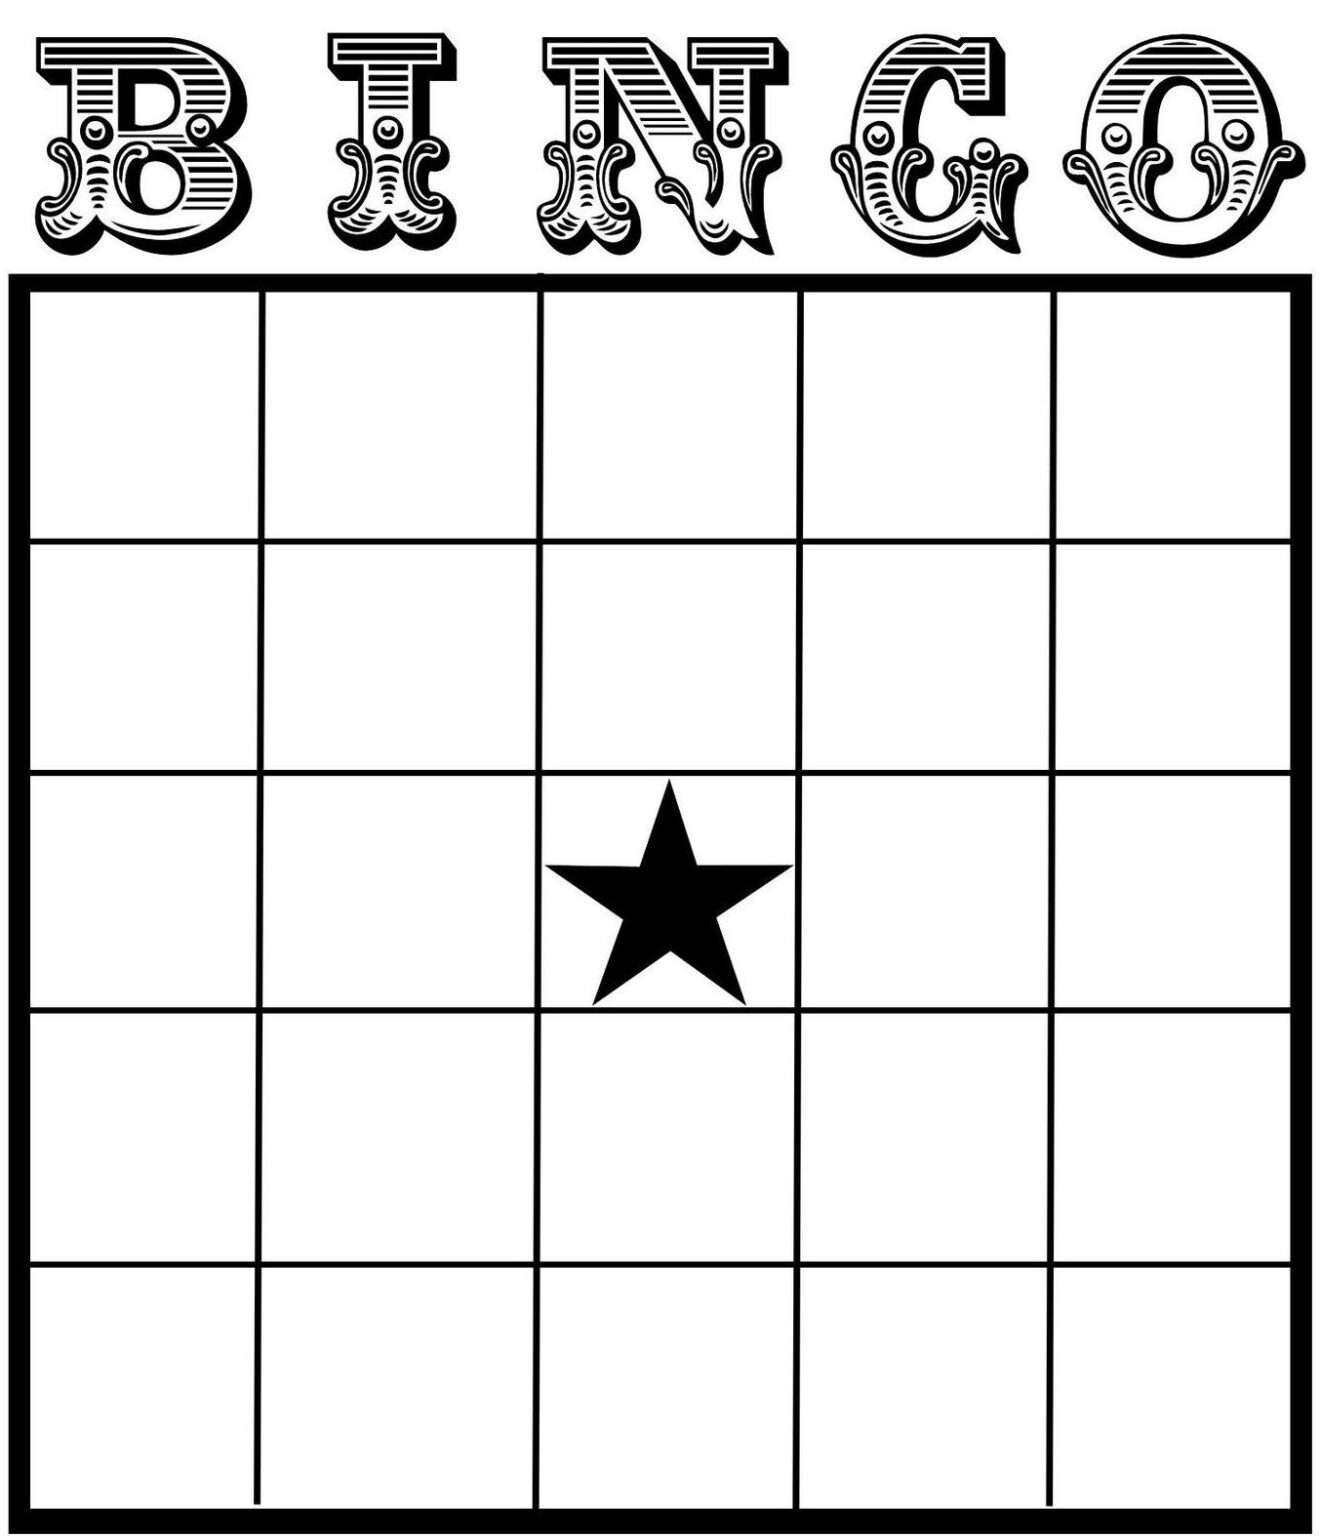 blank-bingo-card-free-printable-printable-world-holiday